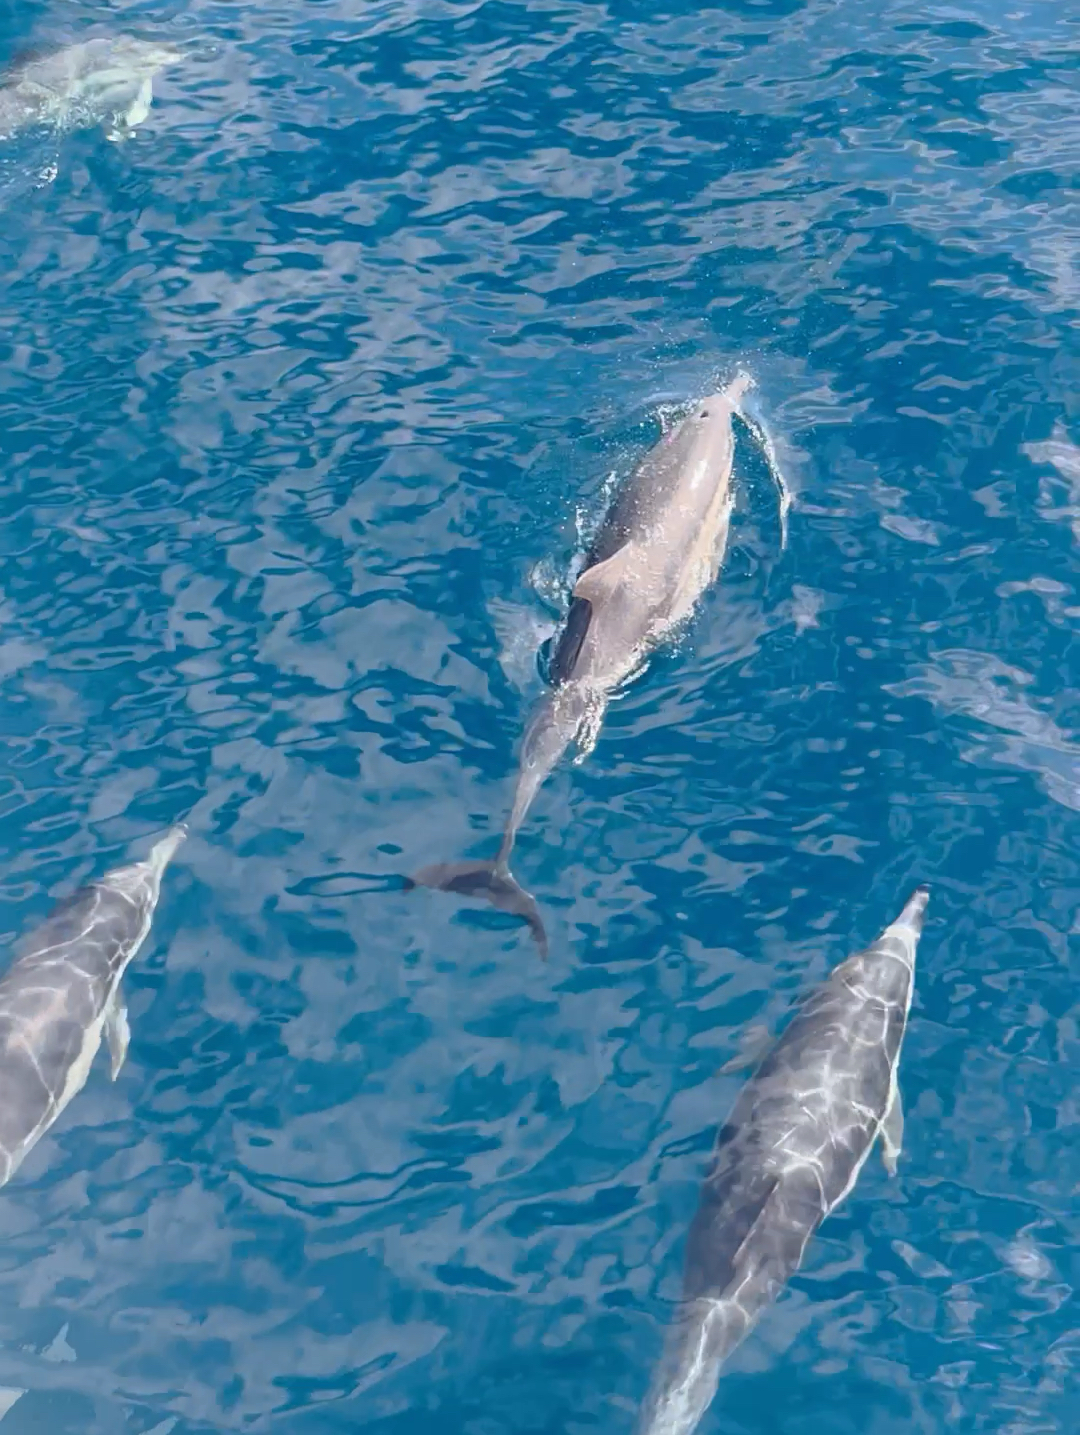 以前都是在海洋馆里面 看到海豚🐬 在大海静距离还是第一次 [Grin][Grin]他们还是可爱和友好